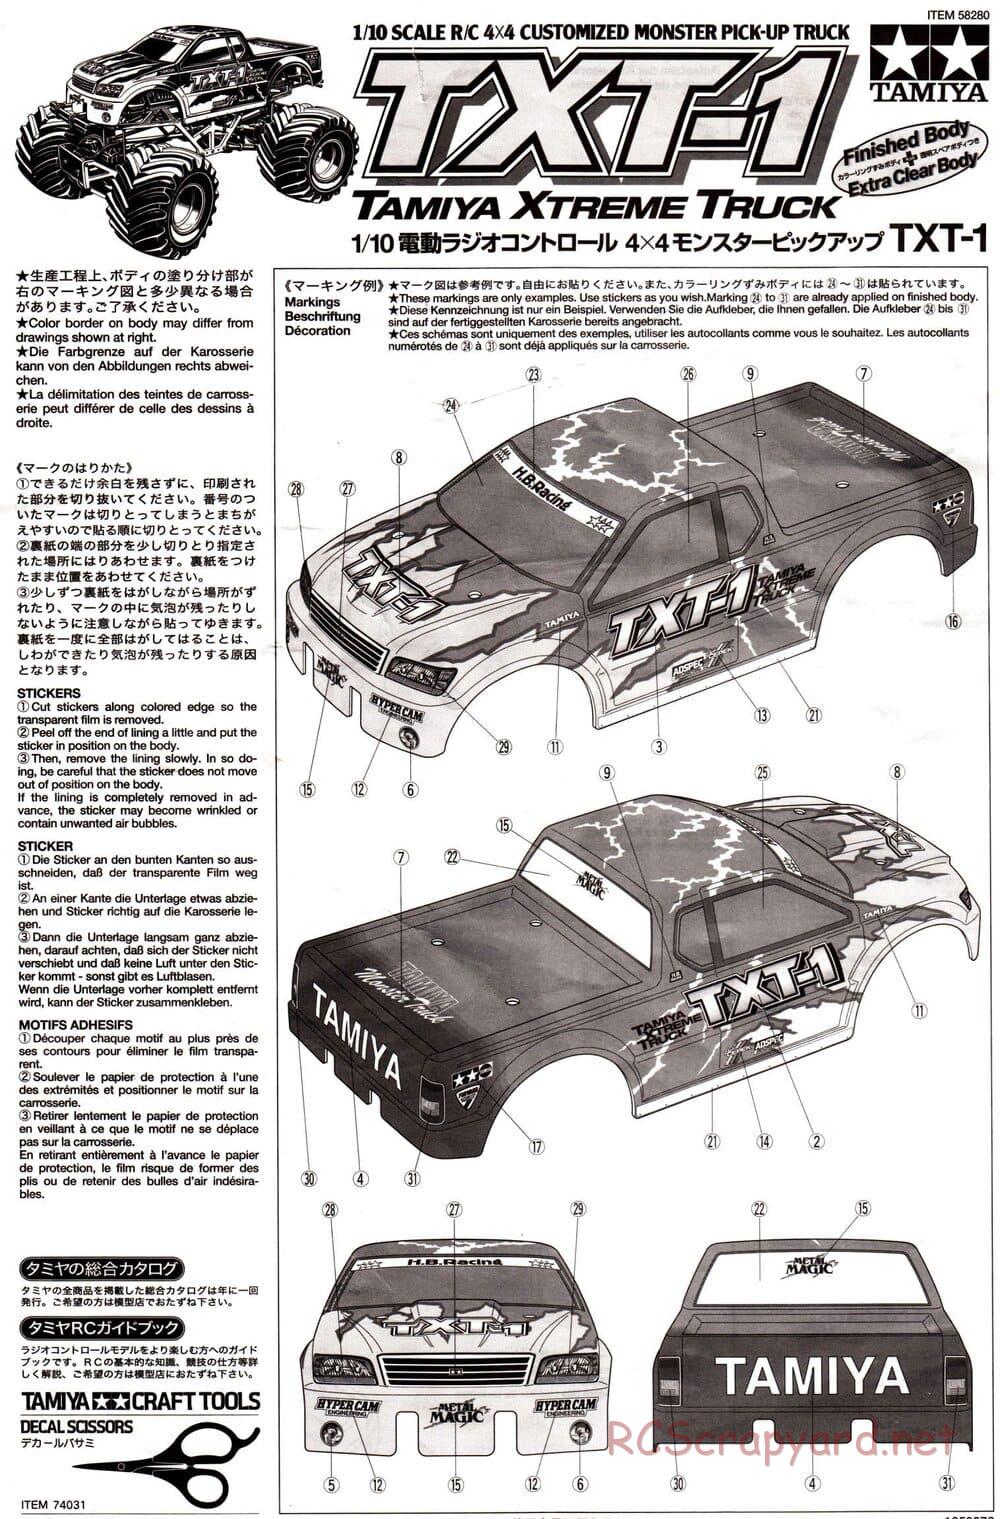 Tamiya - TXT-1 (Tamiya Xtreme Truck) Chassis - Manual - Page 29